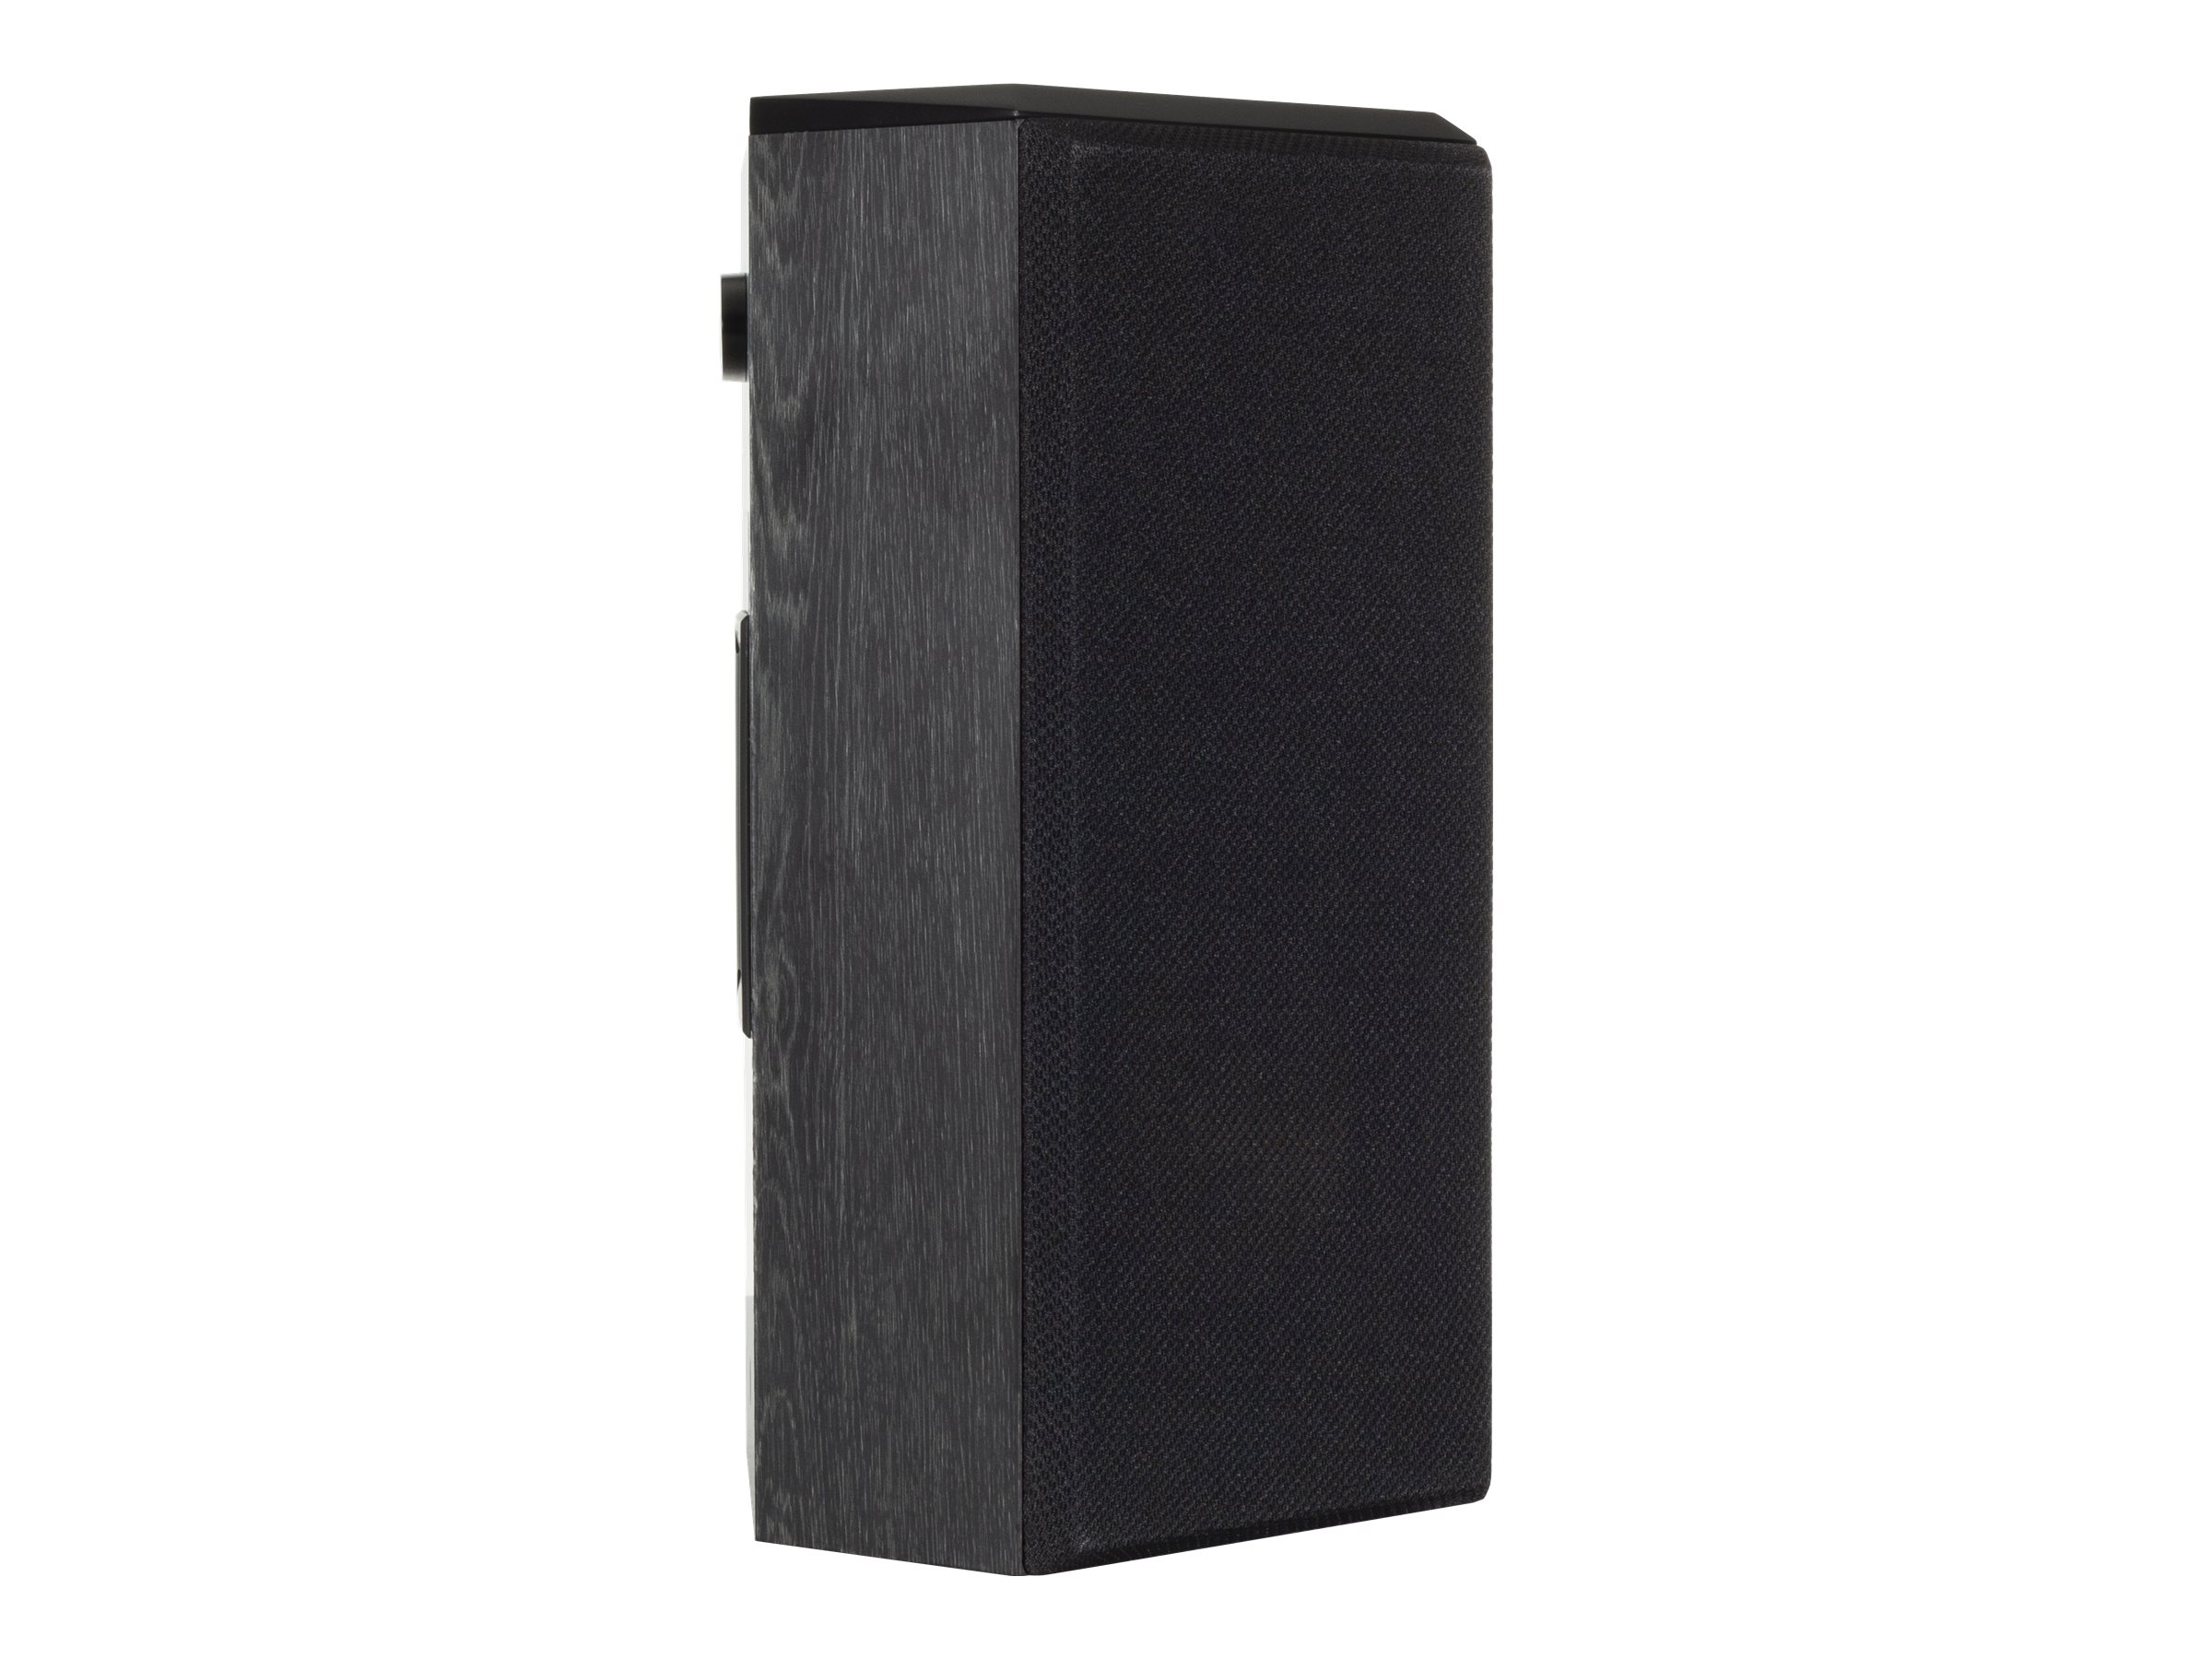 Klipsch Reference Premiere Surround Sound Speaker - Black - RP502SB